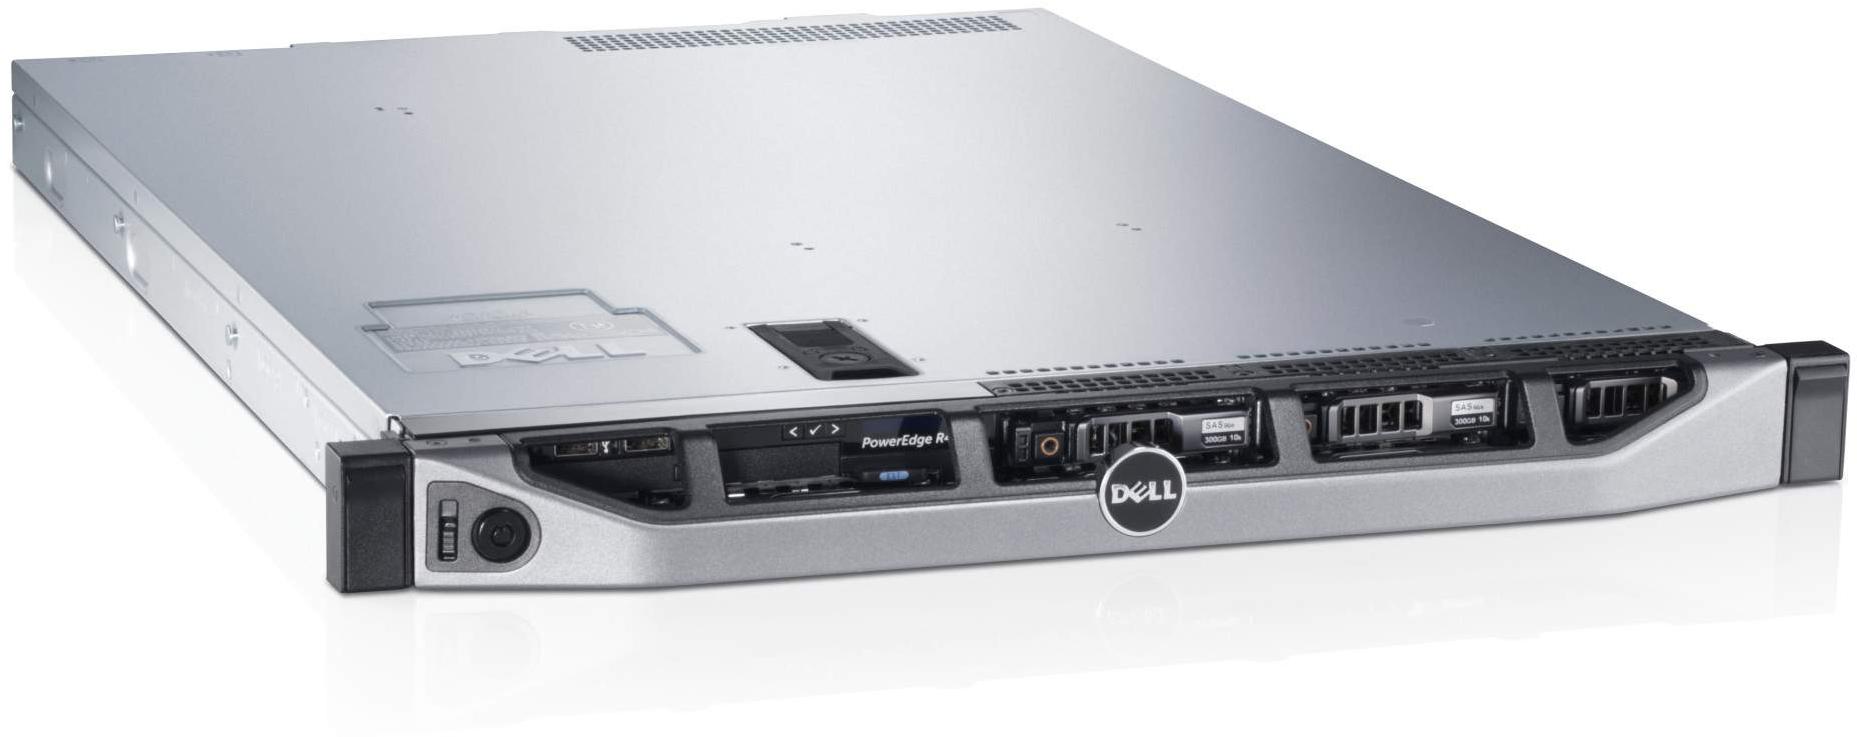     Dell PowerEdge R620 (210-39504-123)  2